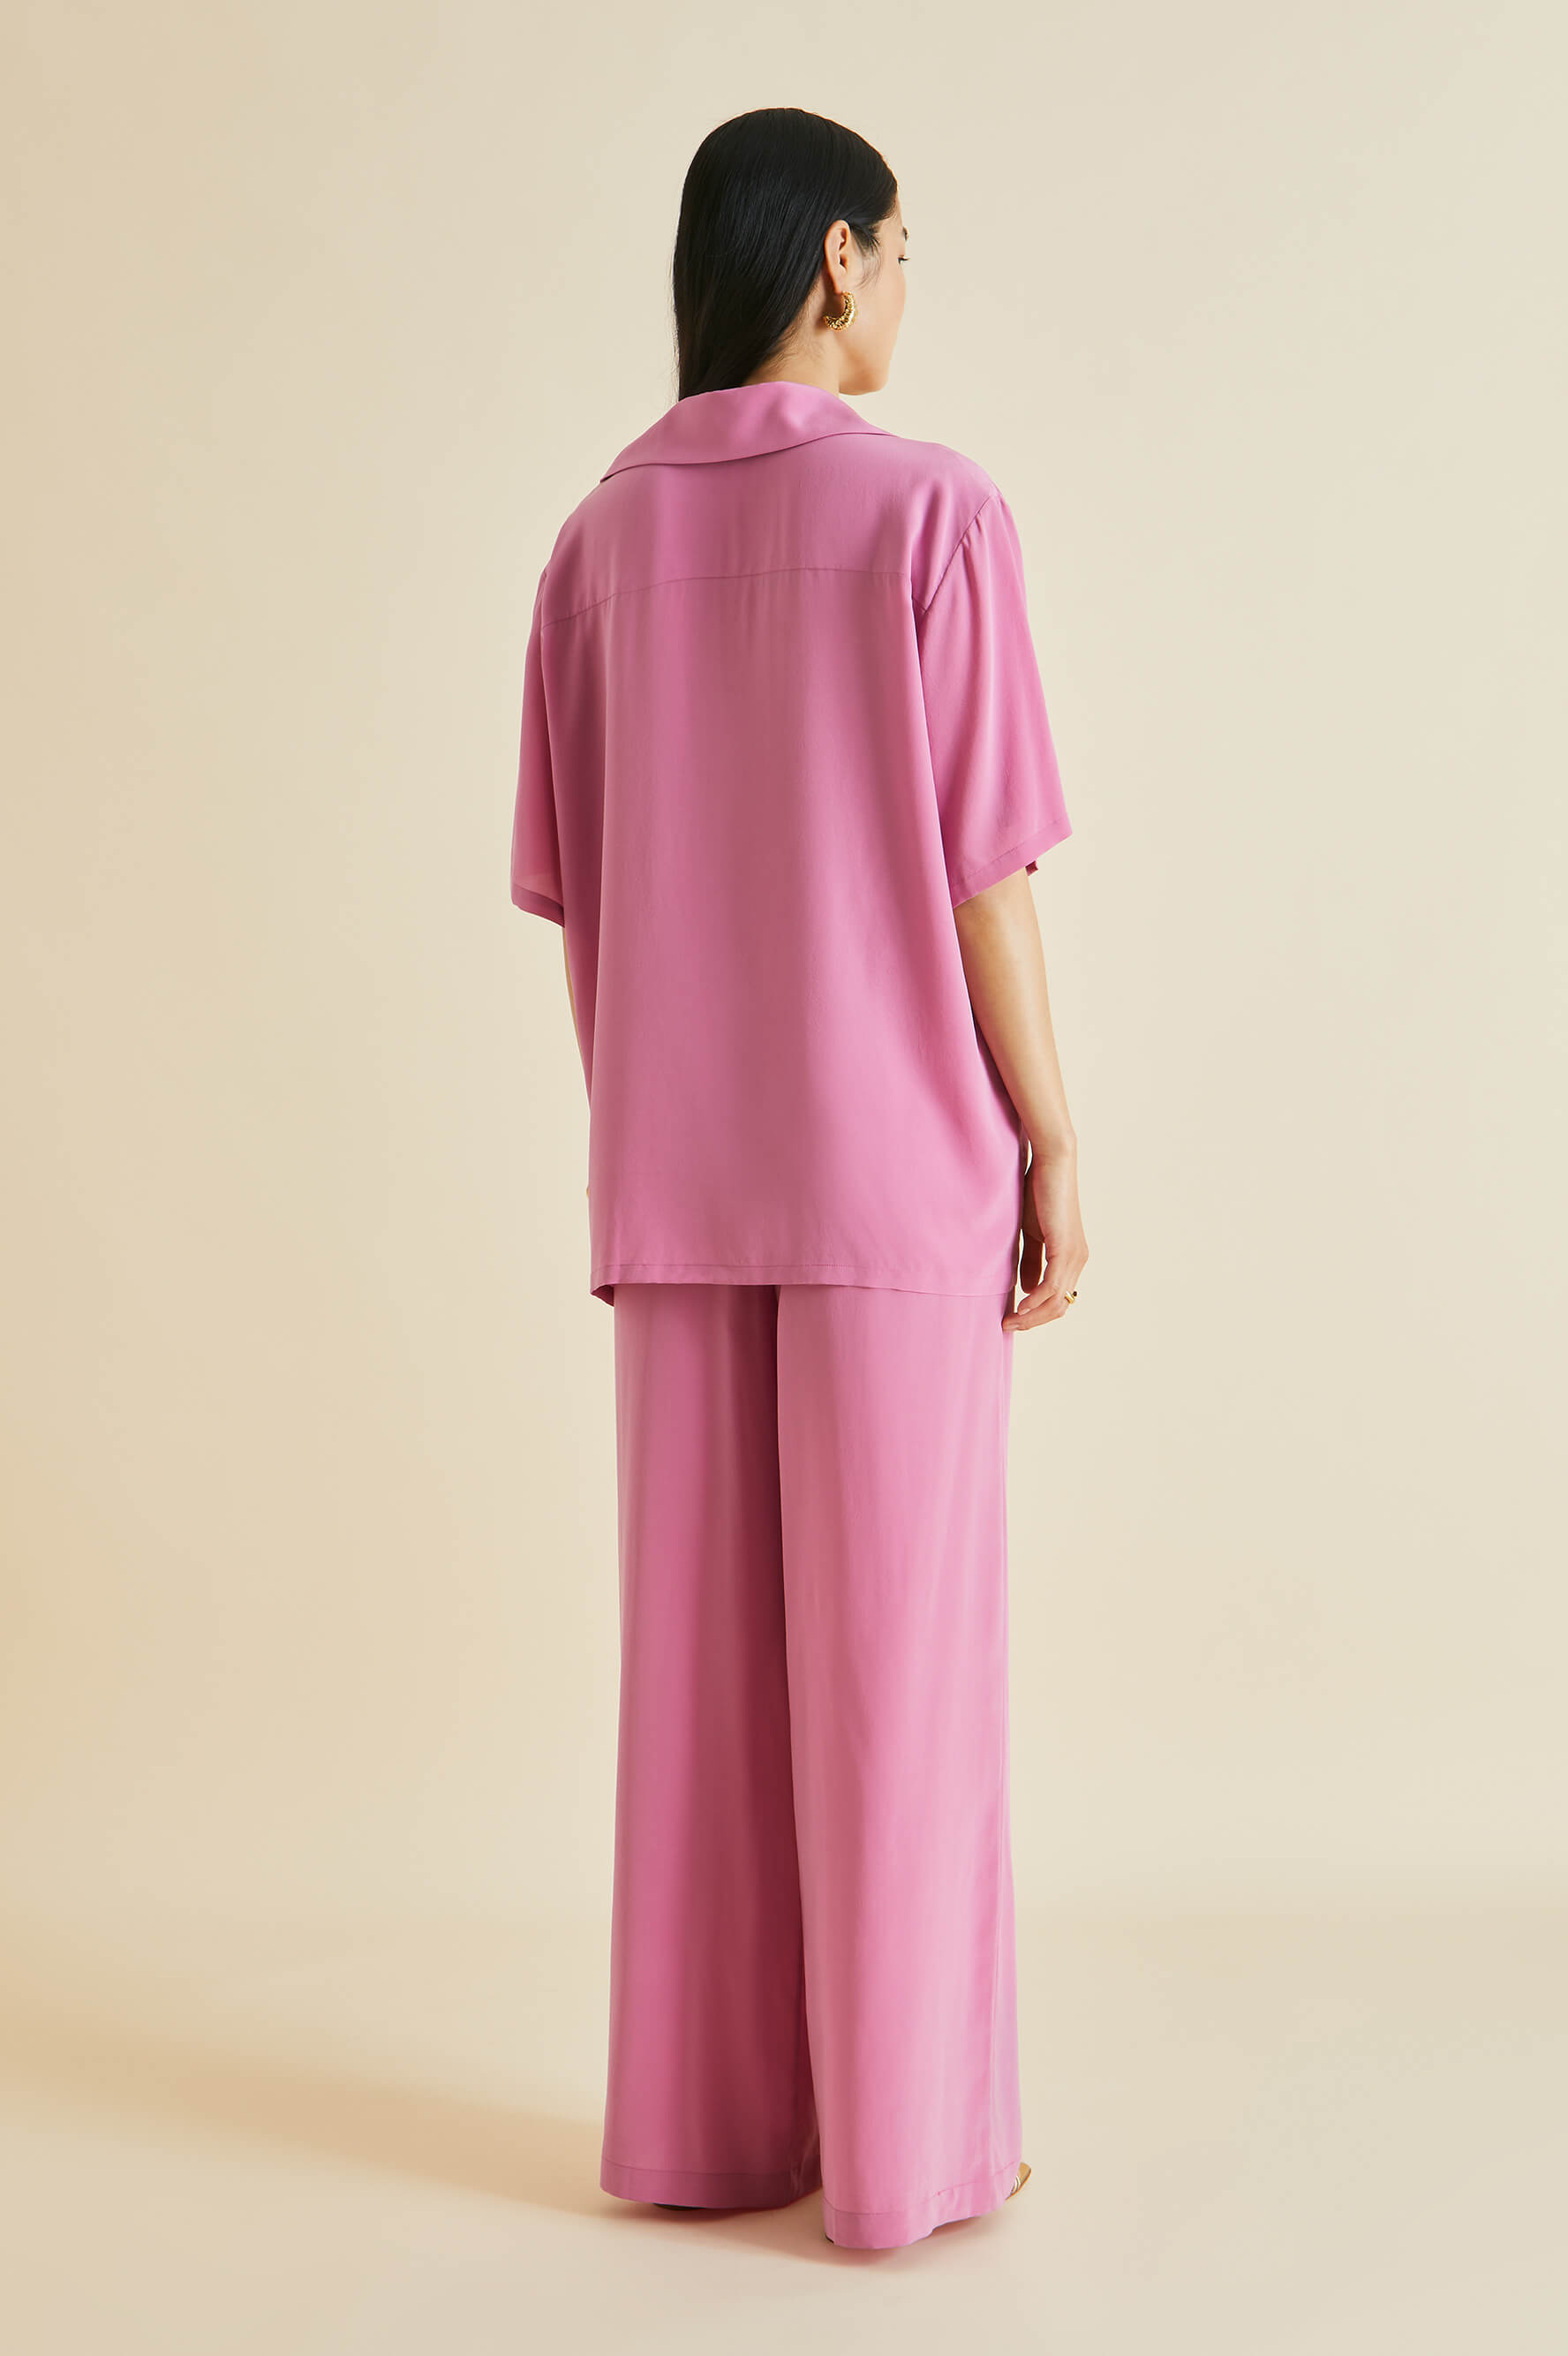 Alabama Pink Silk Crêpe de Chine Pyjamas